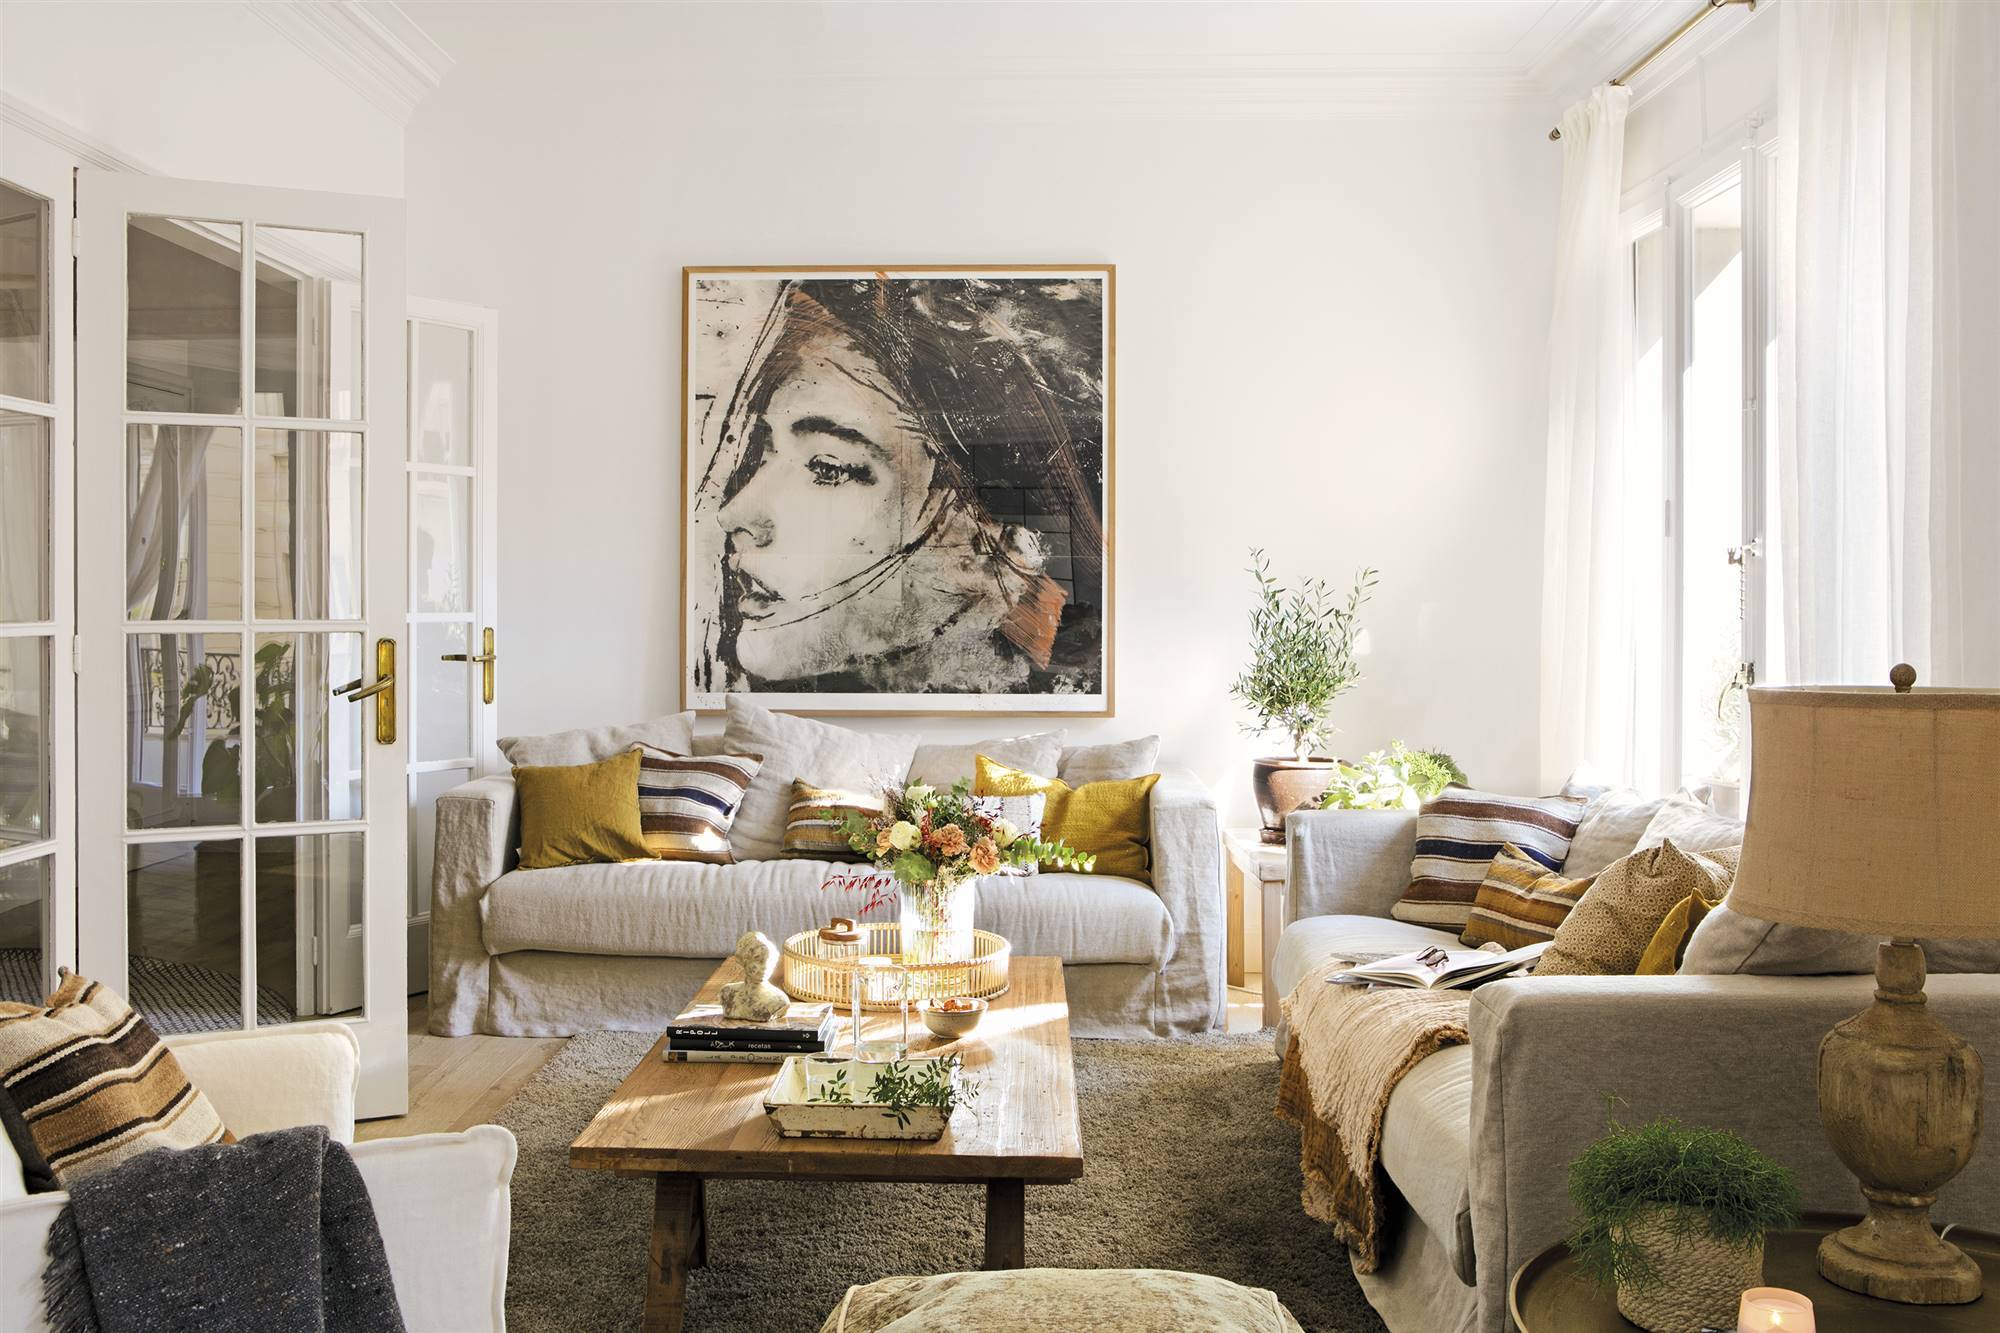 Salón con dos sofás en "L" y cuadro de Lidia Masllorens